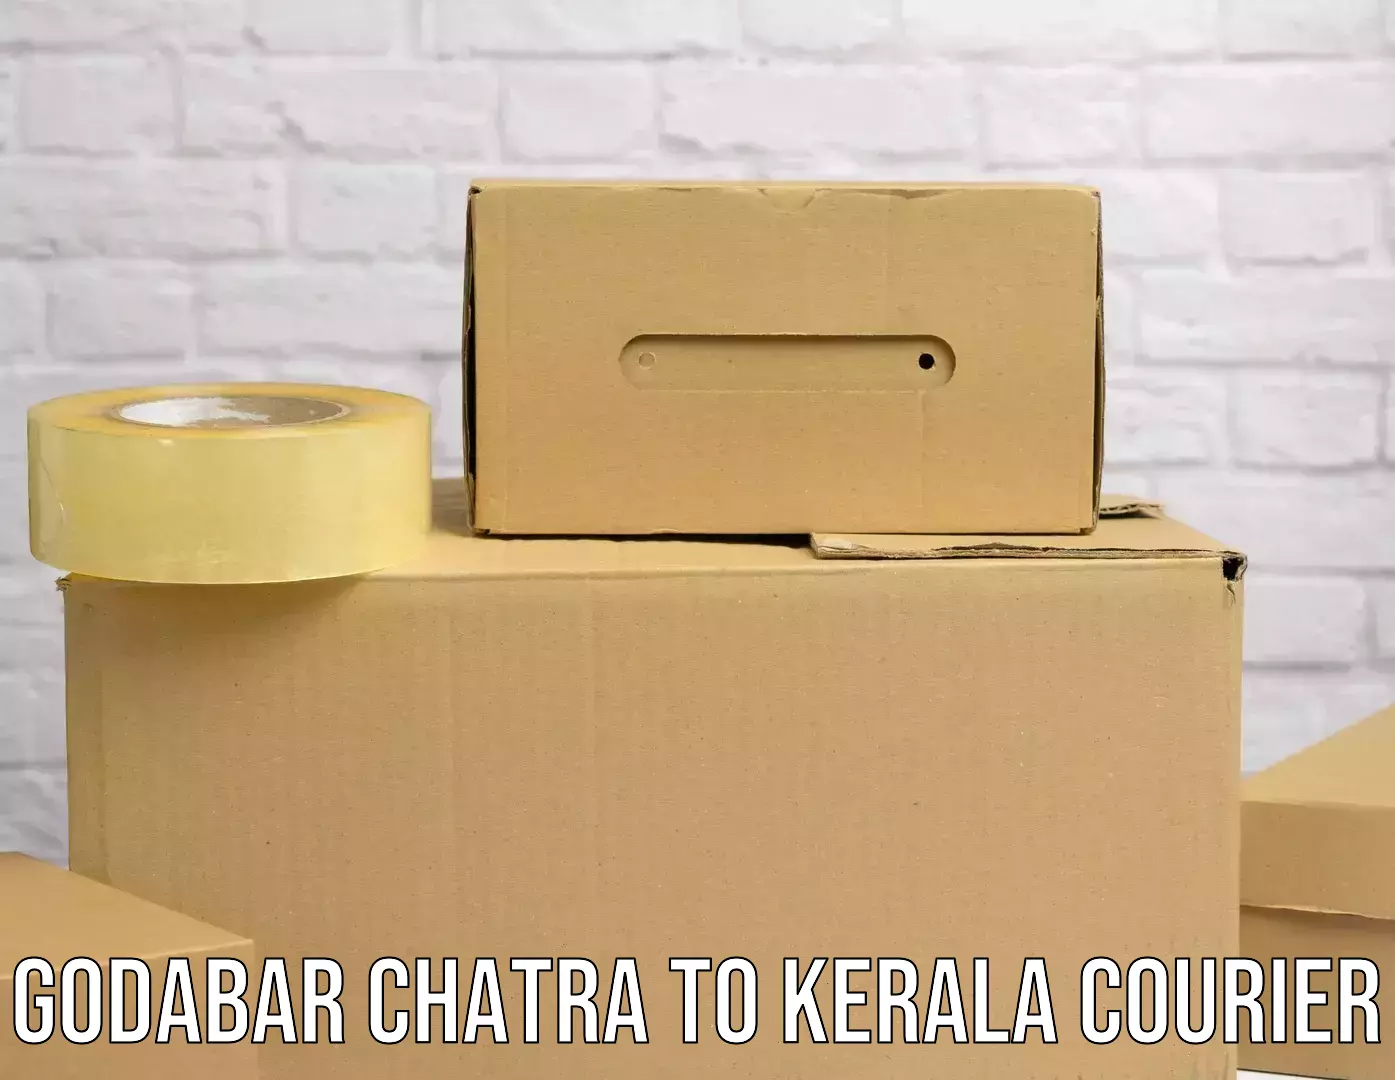 Domestic courier Godabar Chatra to Ponekkara